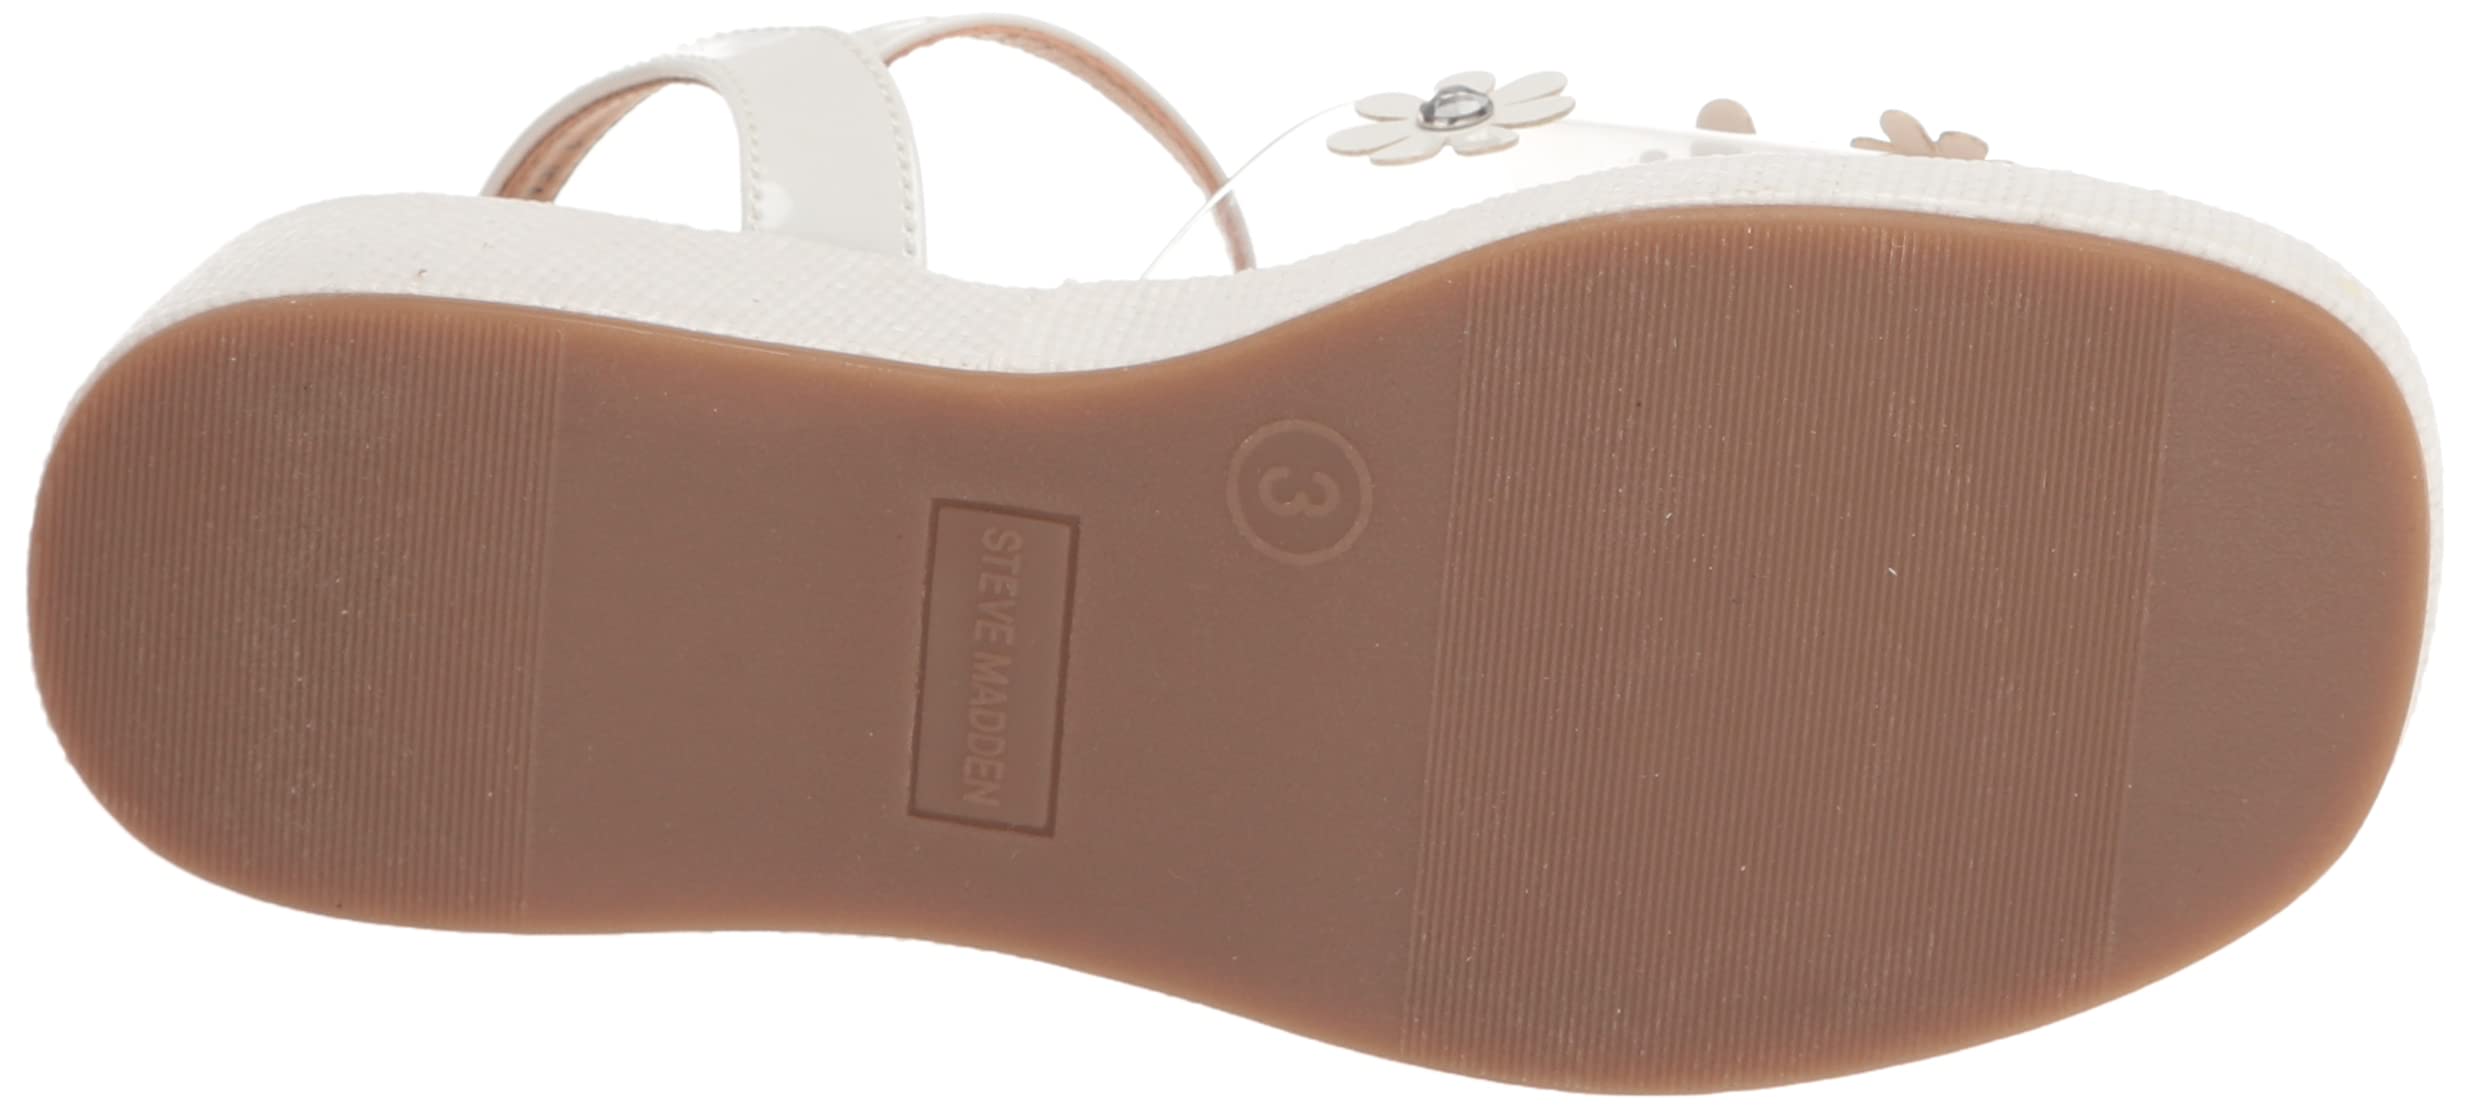 Steve Madden Girls Shoes Unisex-Child Farrah Wedge Sandal